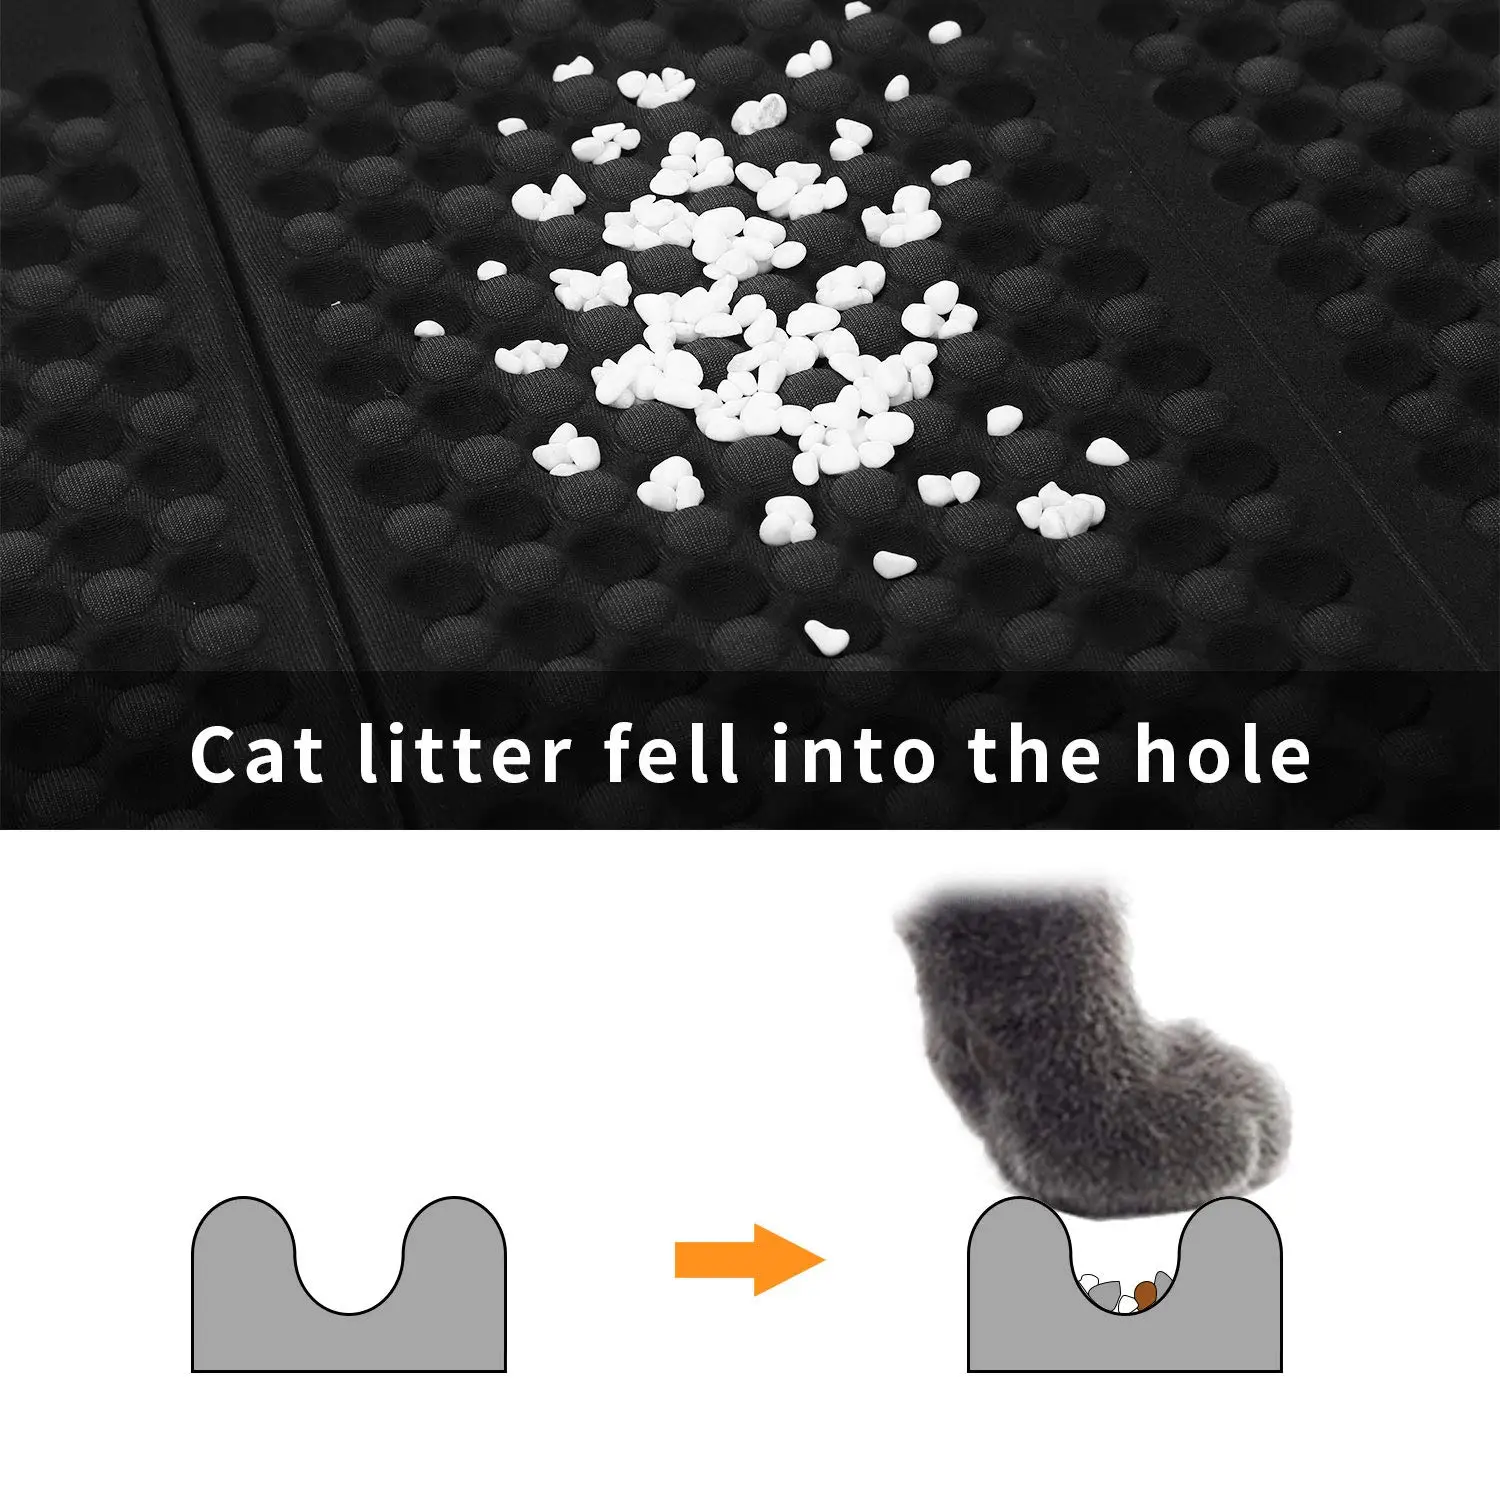 Складной коврик для кошачьего туалета EVA для кошек подушка для кошачьего туалета комплект BPA бесплатно доска для котенка Двусторонняя удобная и мягкая